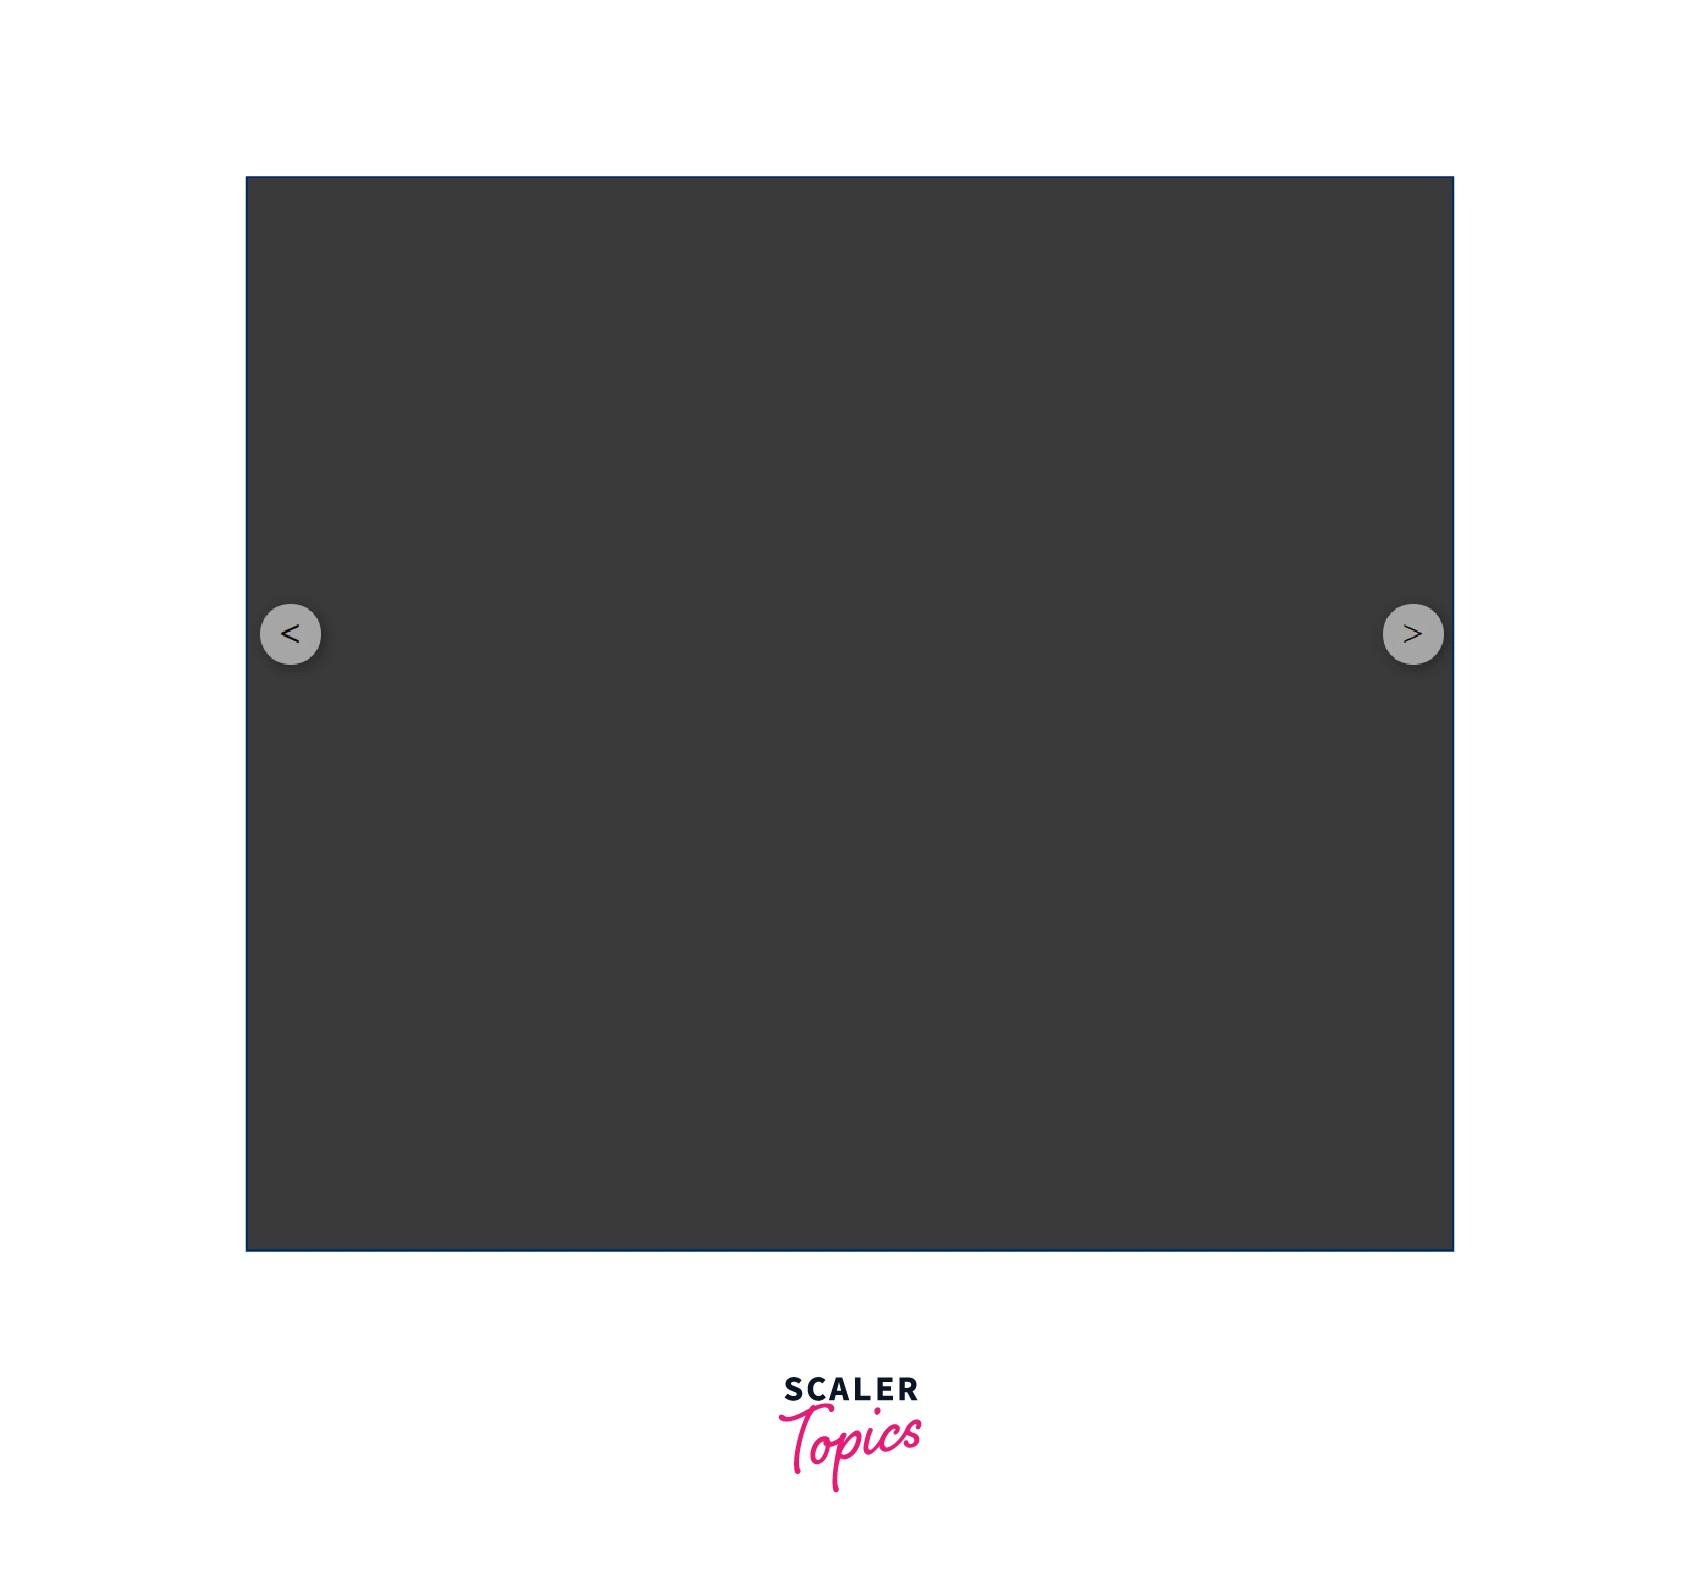 output-creating-basic-layout-of-image-slider